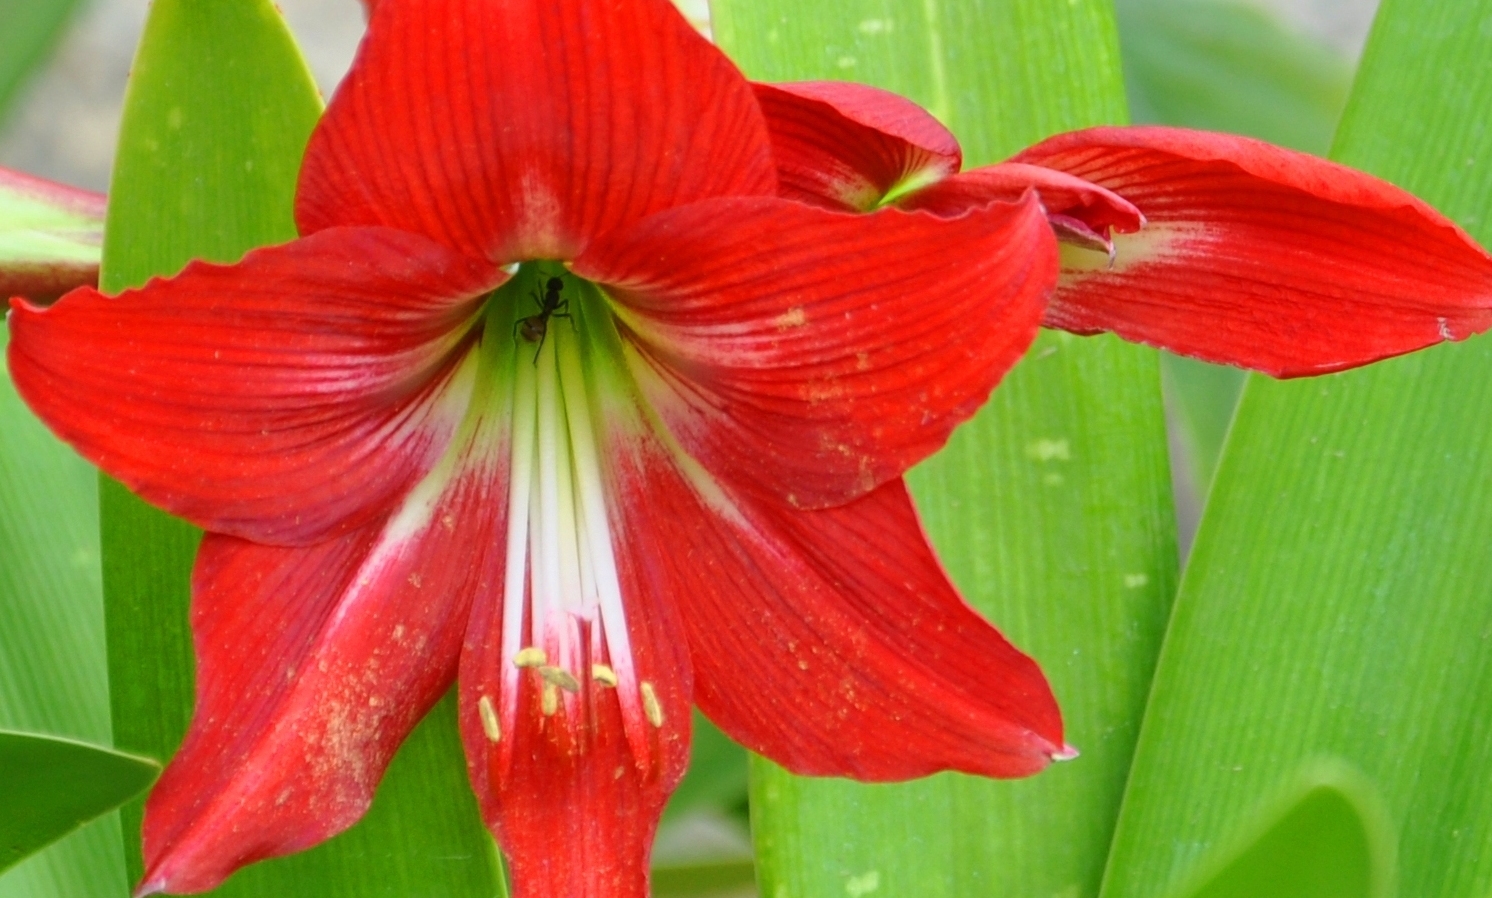 Tuyển tập hình ảnh hoa loa kèn đỏ đẹp nhất - [Kích thước hình ảnh: 1492x898 px]